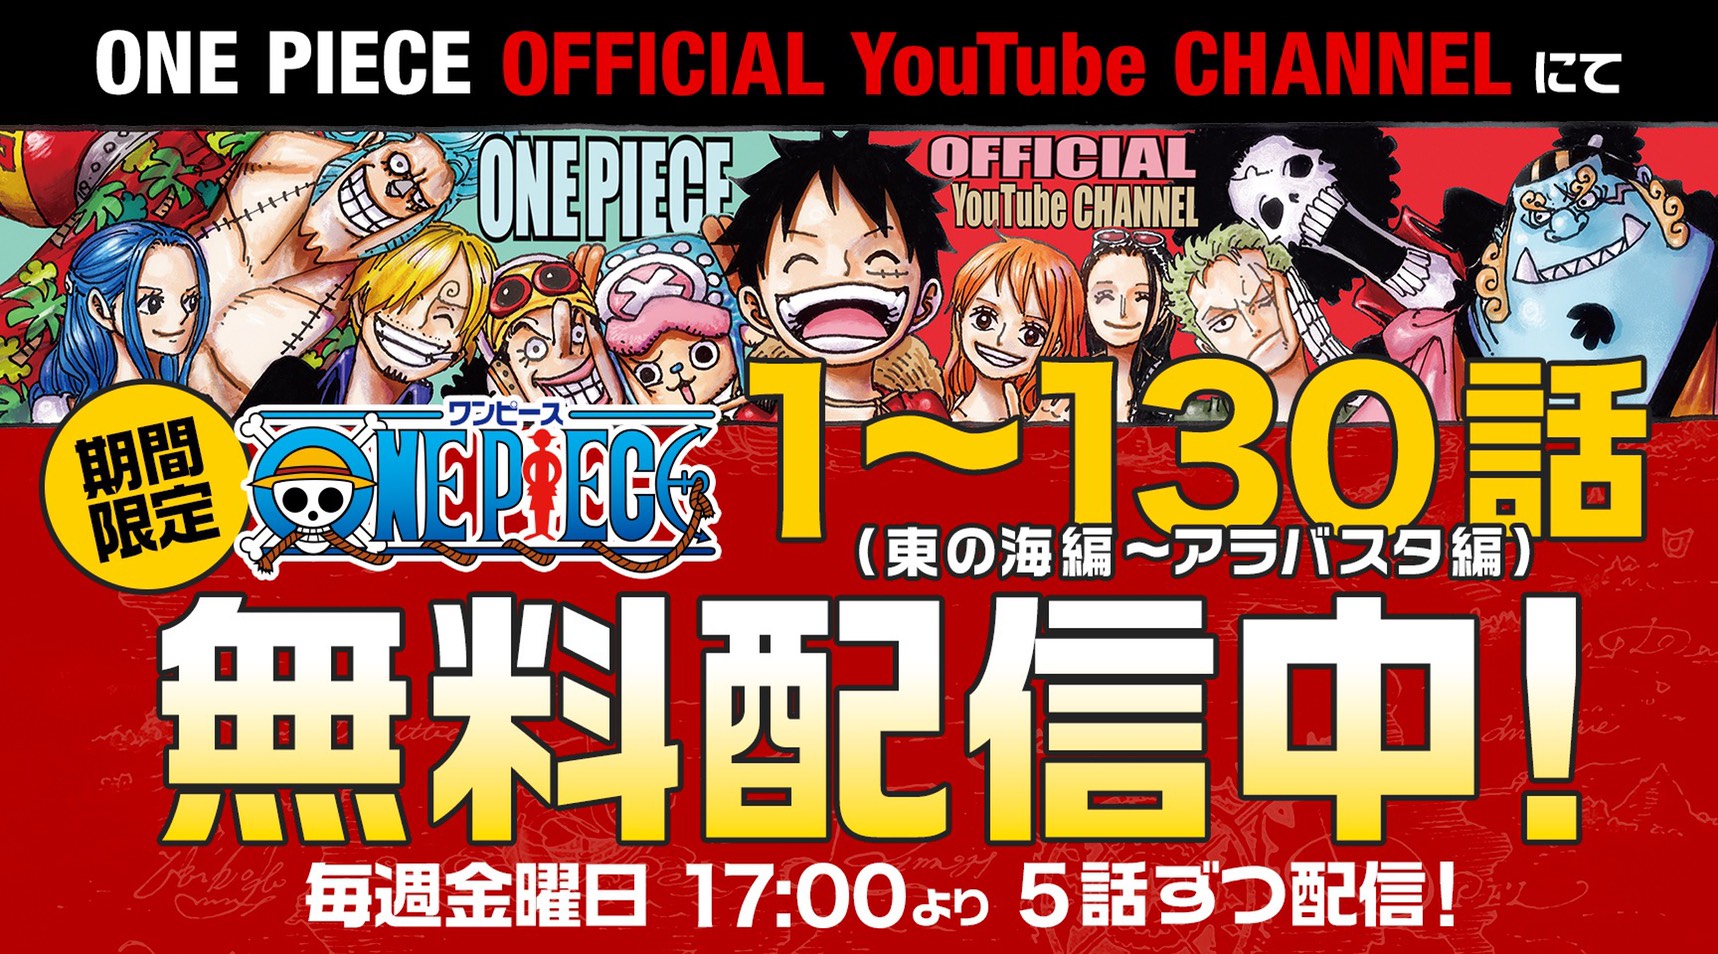 One Piece1000logs